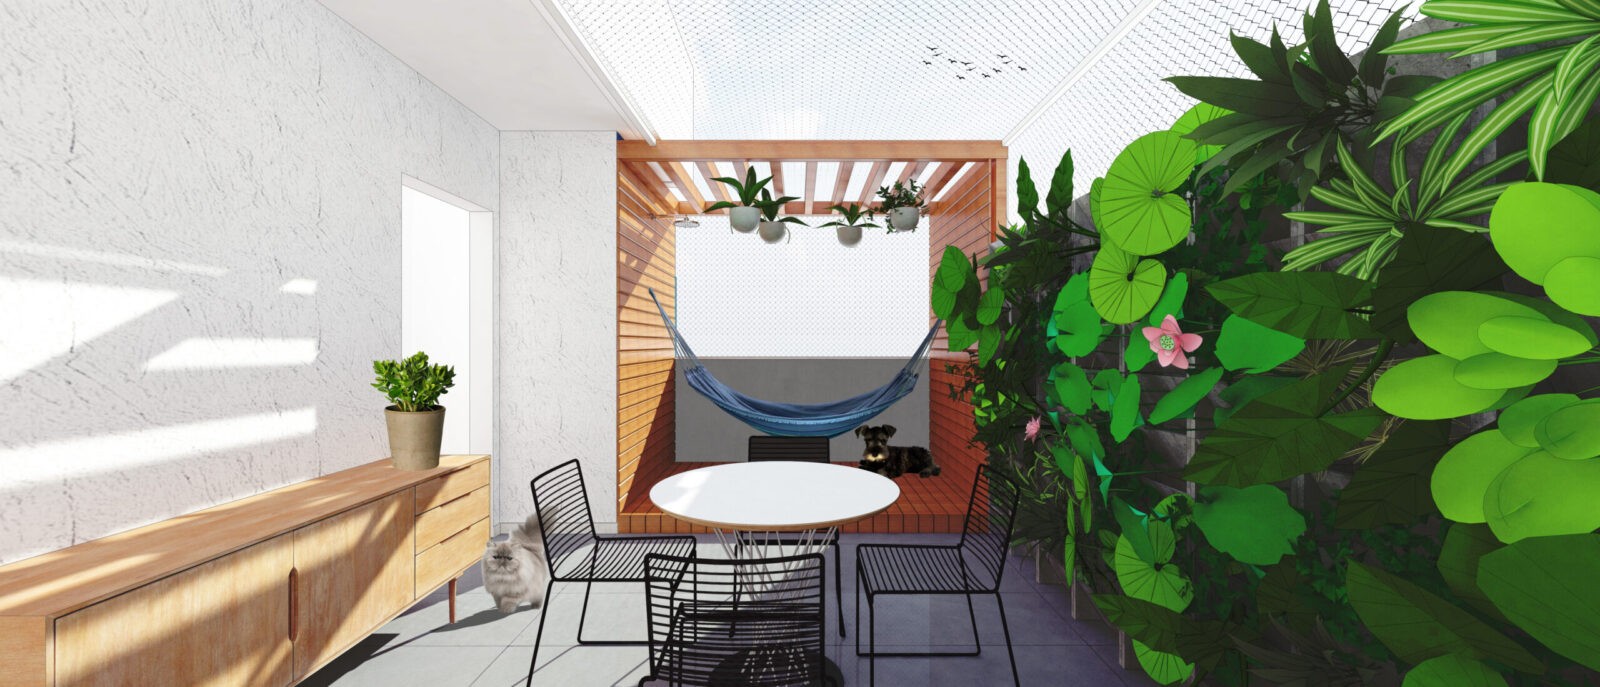 Projeto apartamento reforma arquitetura interiores decoração belo horizonte